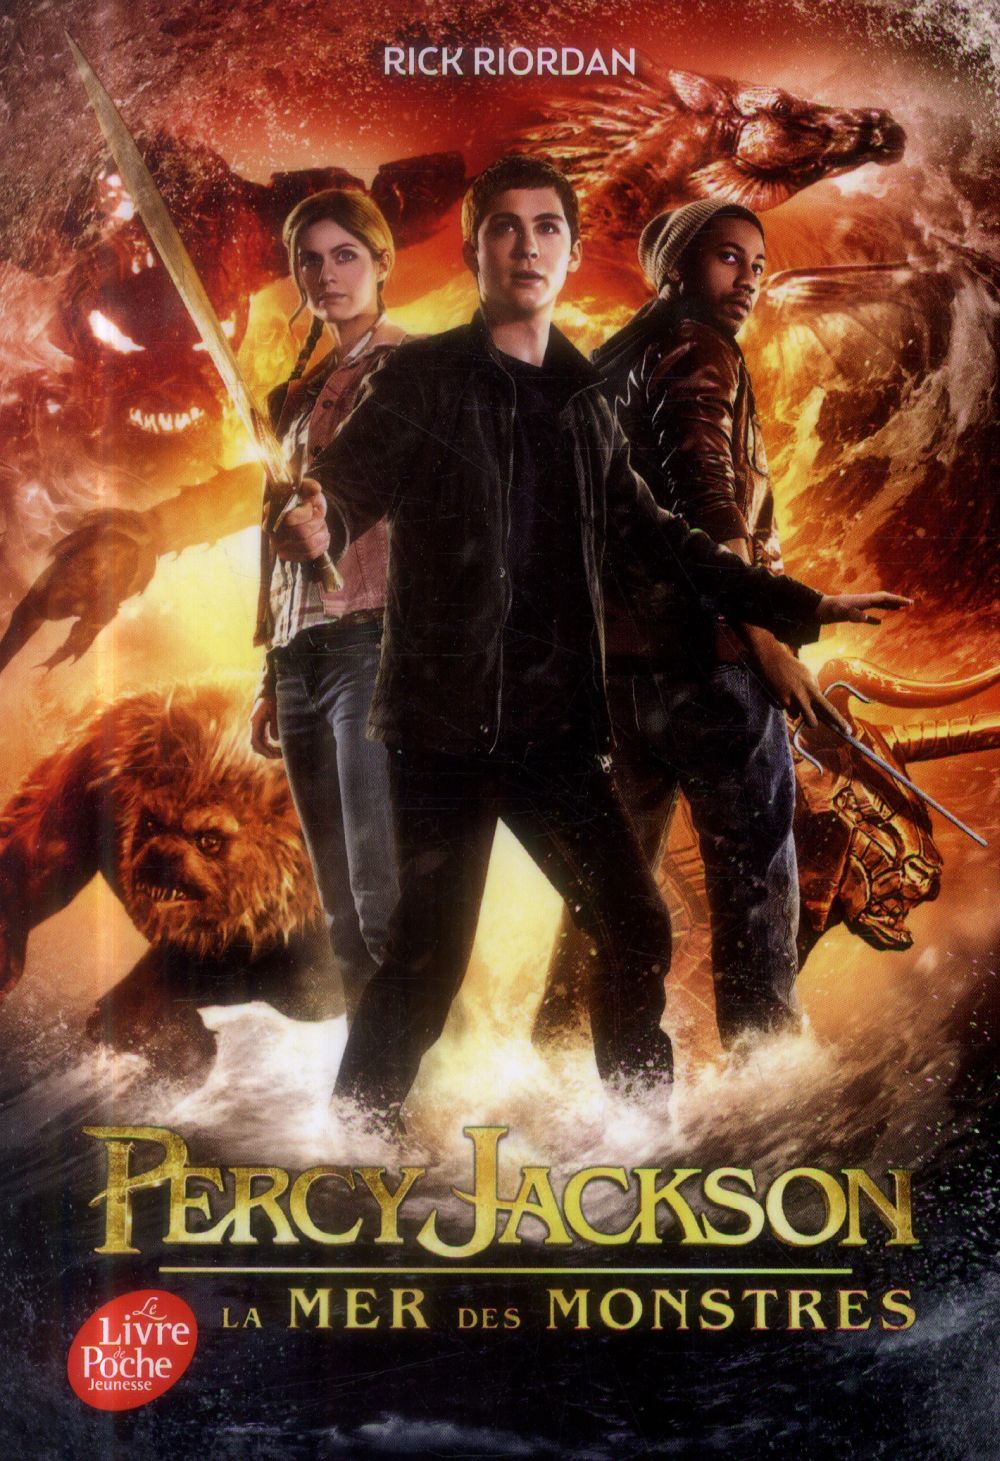 PERCY JACKSON - TOME 2 - LA MER DES MONSTRES (EDITION AVEC AFFICHE DU FILM EN COUVERTURE)